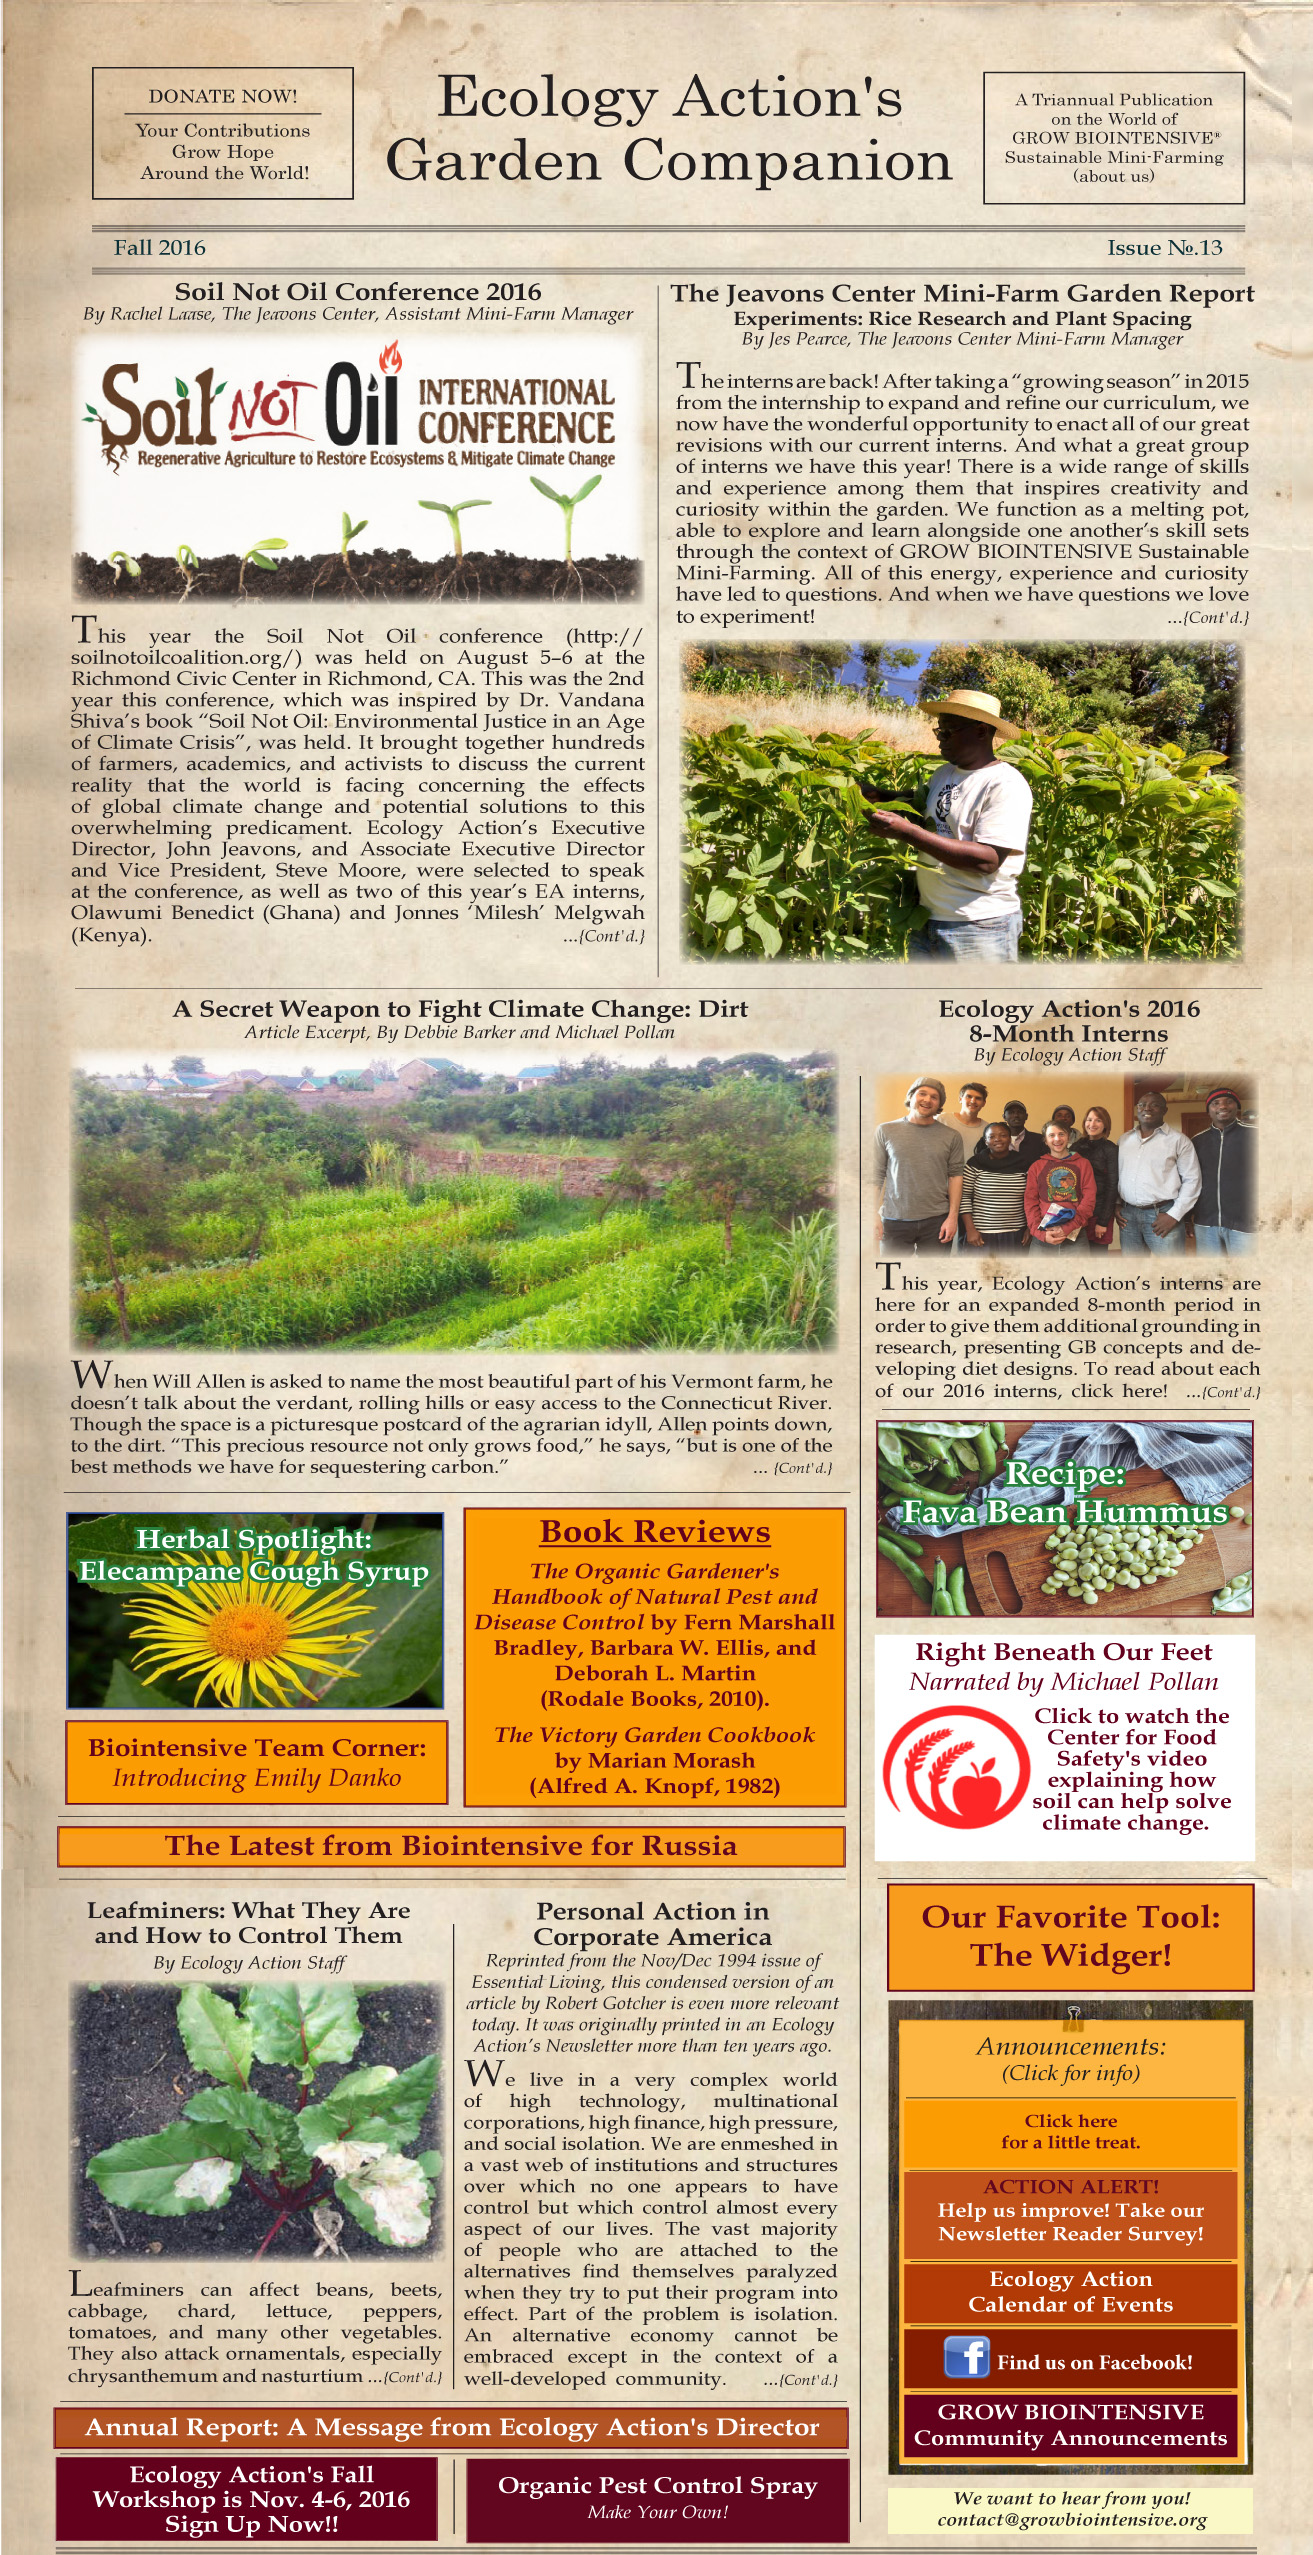 Garden Companion Newsletter Issue No. 13